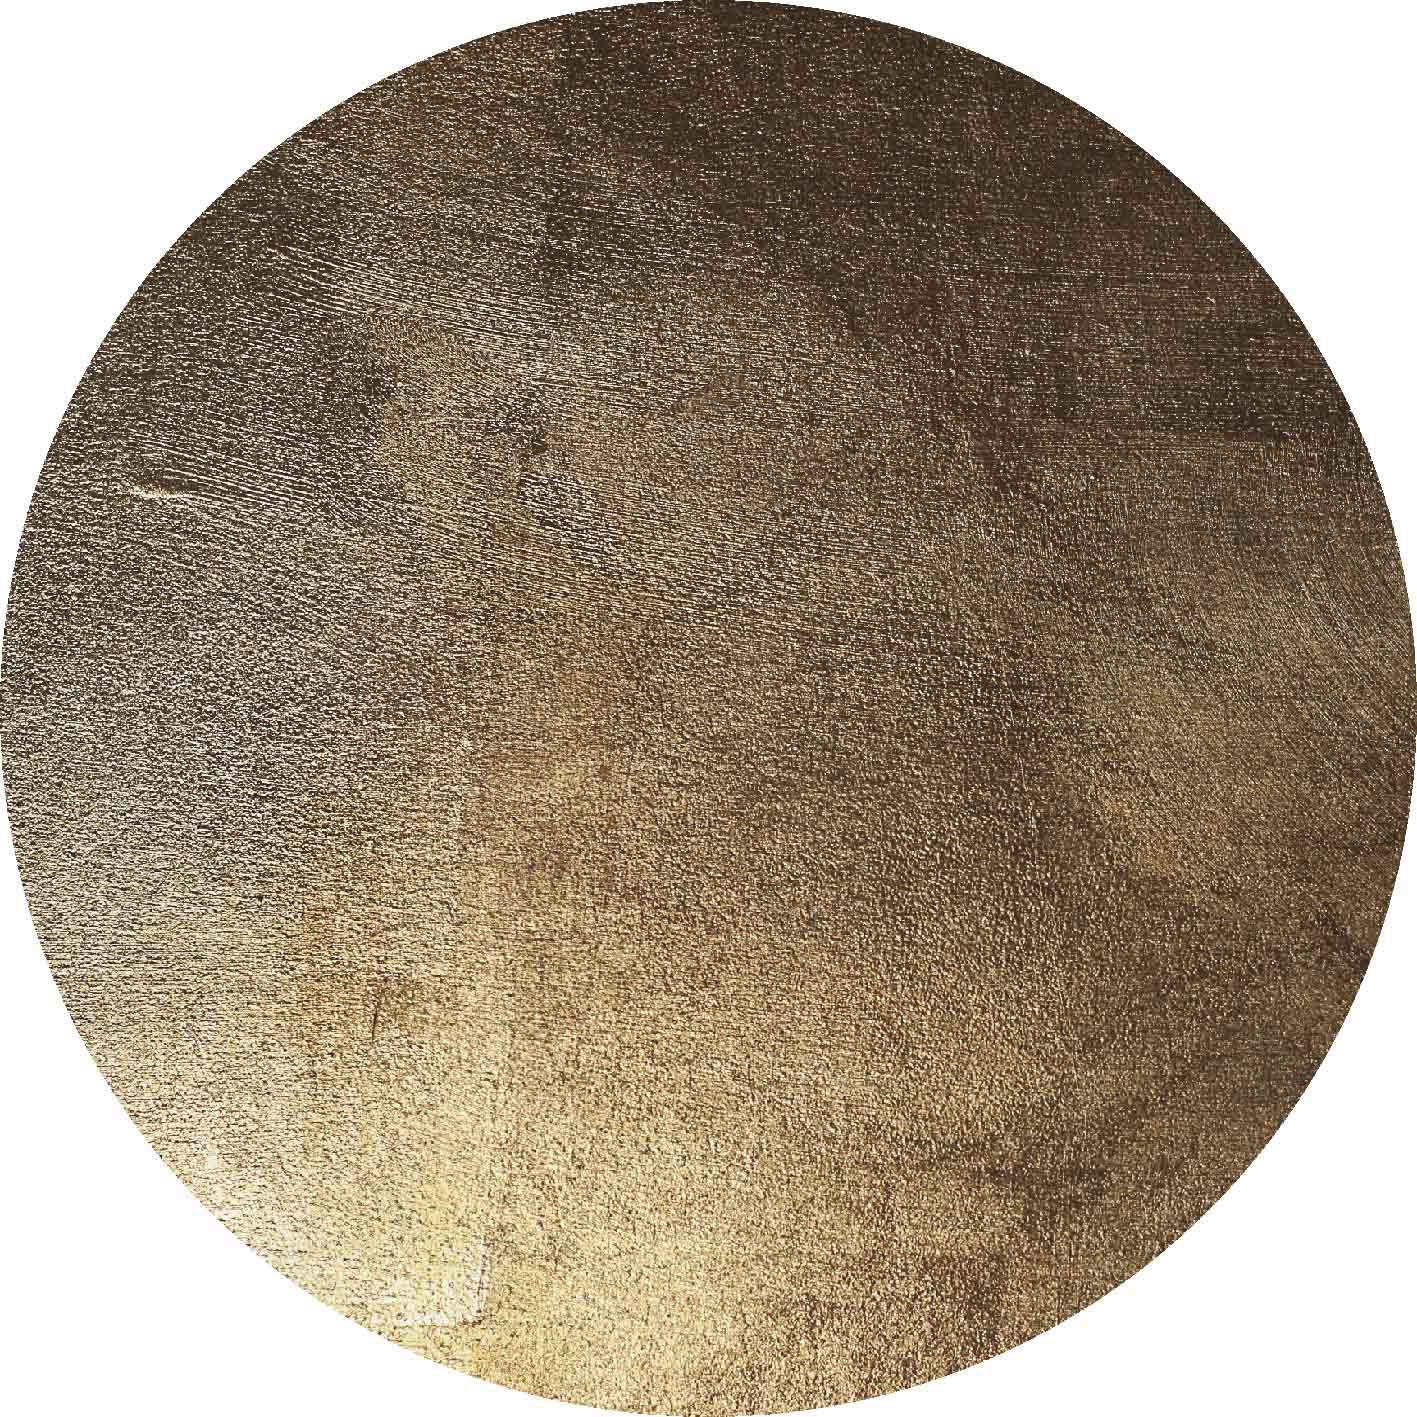 Rundt tæppe - Oristano (brun/guld)